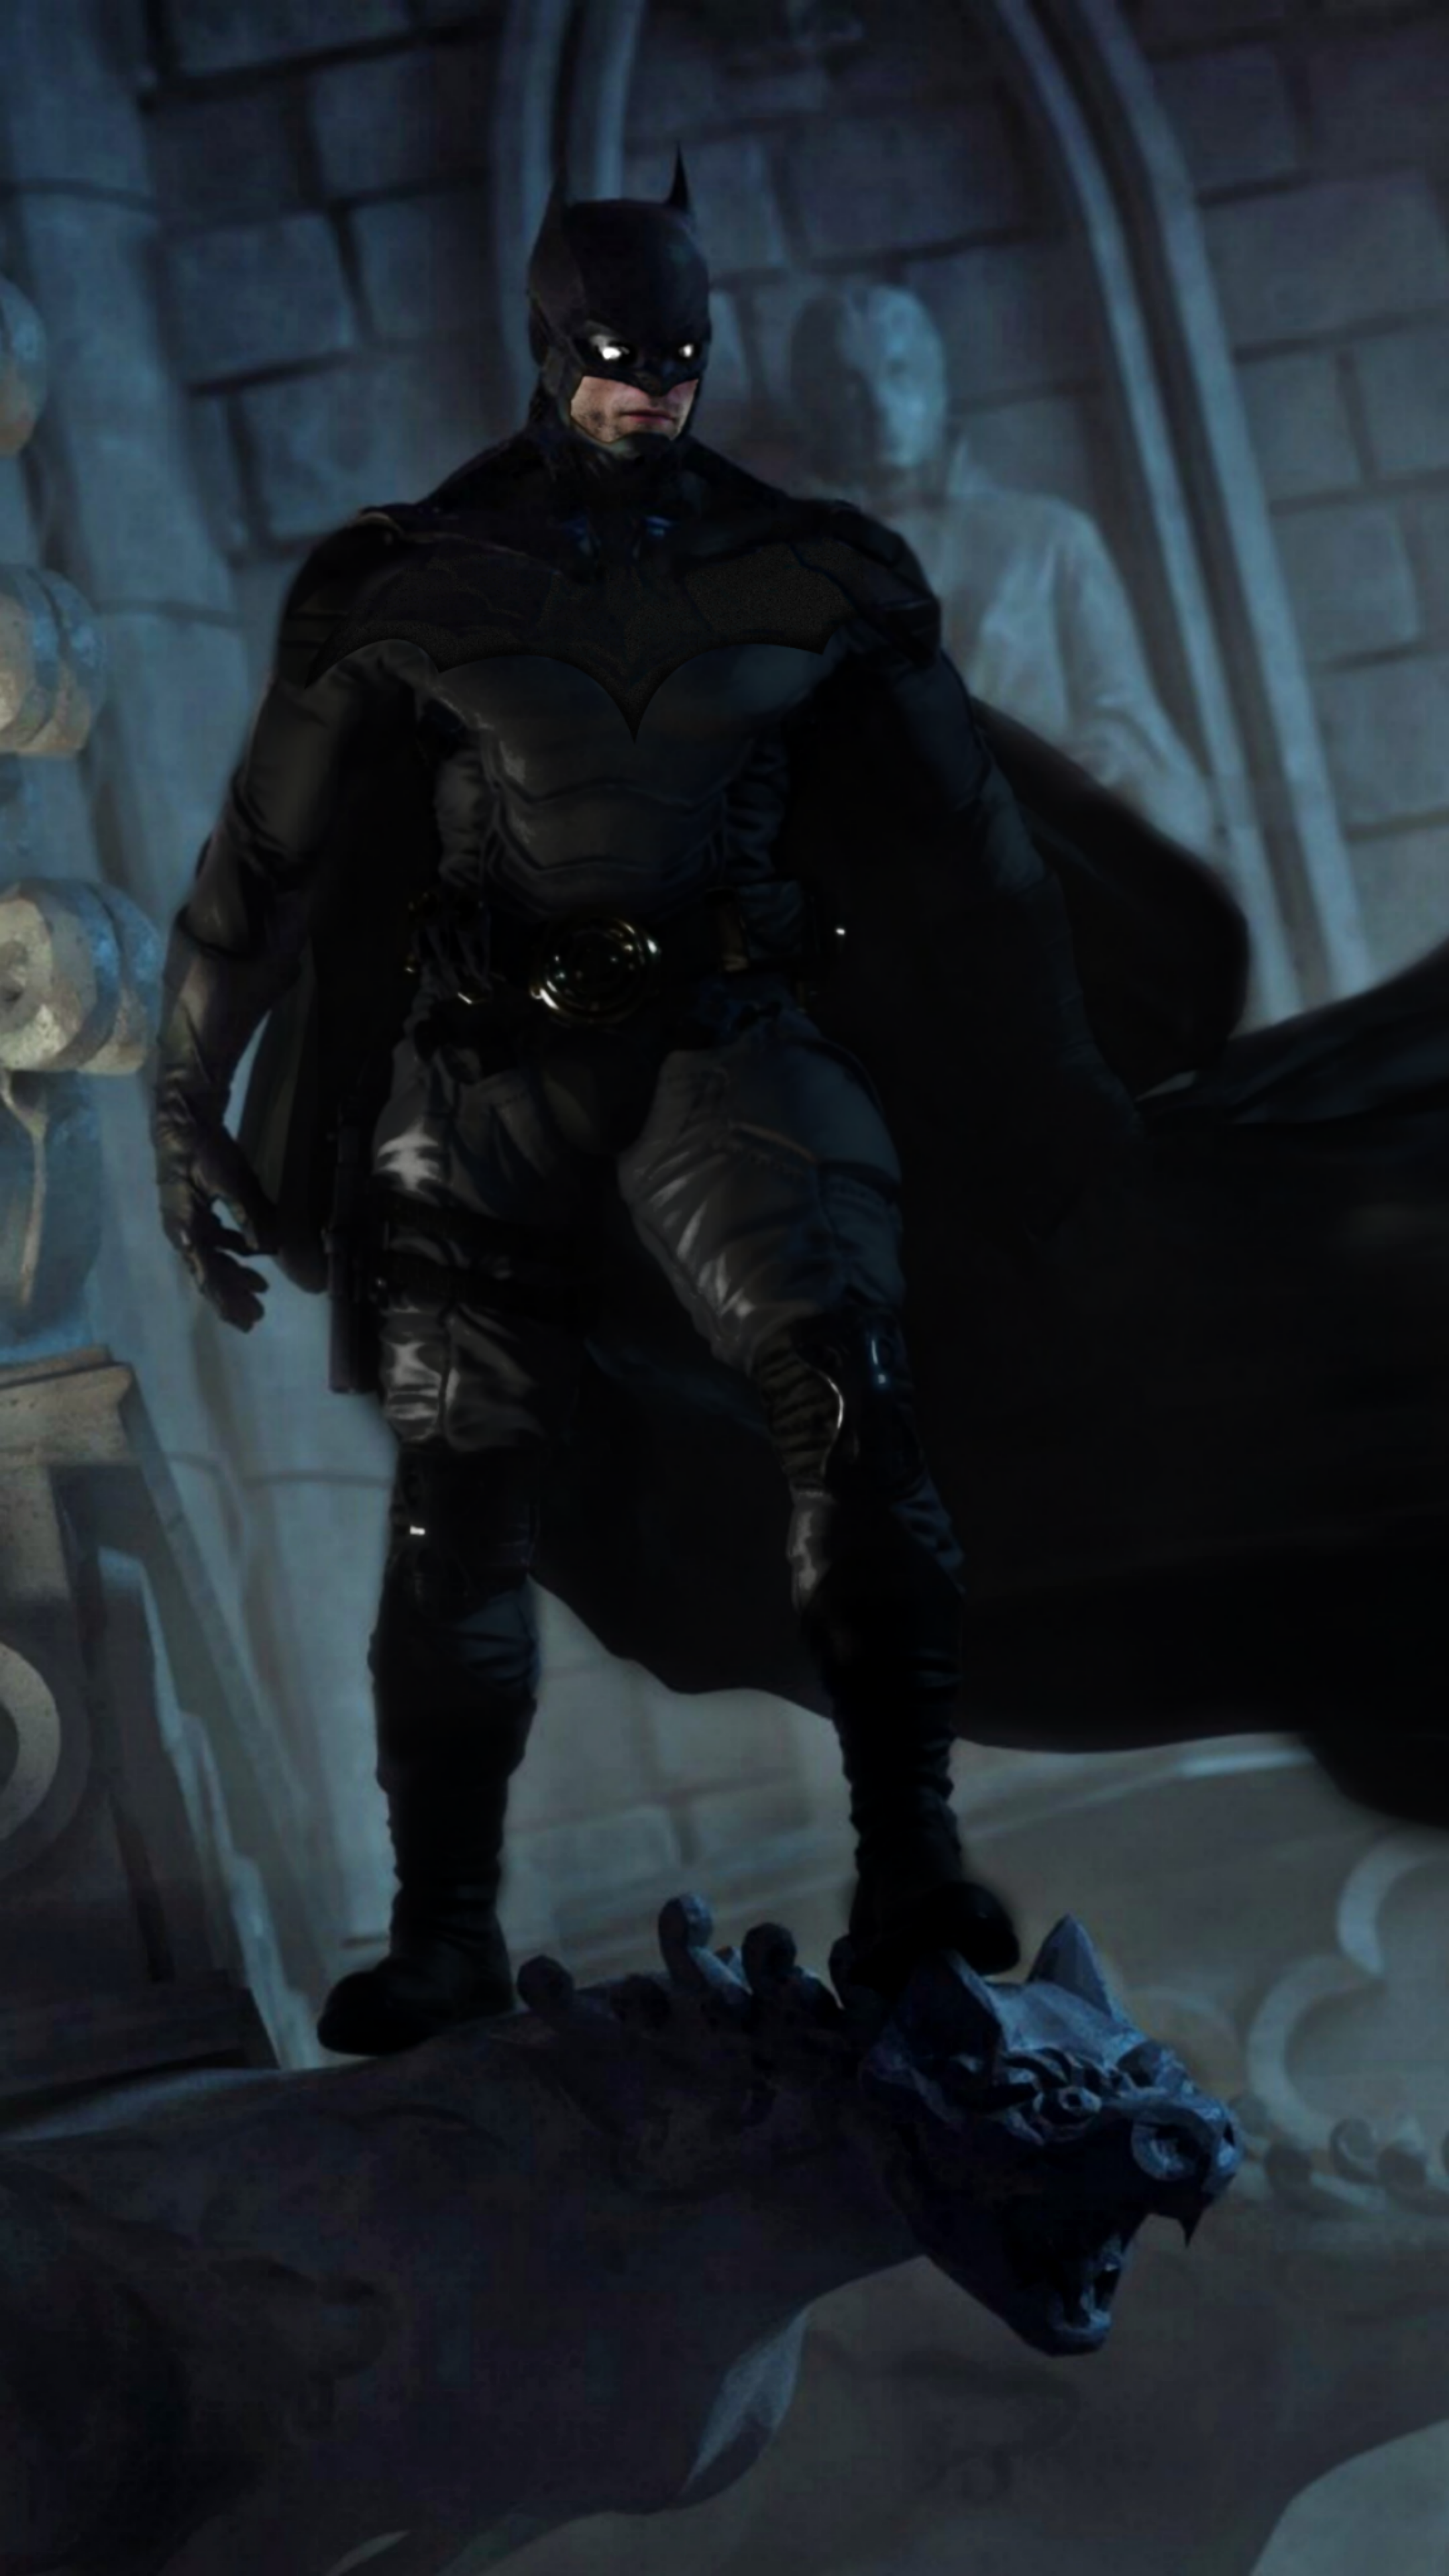 Batman suit concept for Robert Pattinson's The Batman 2021